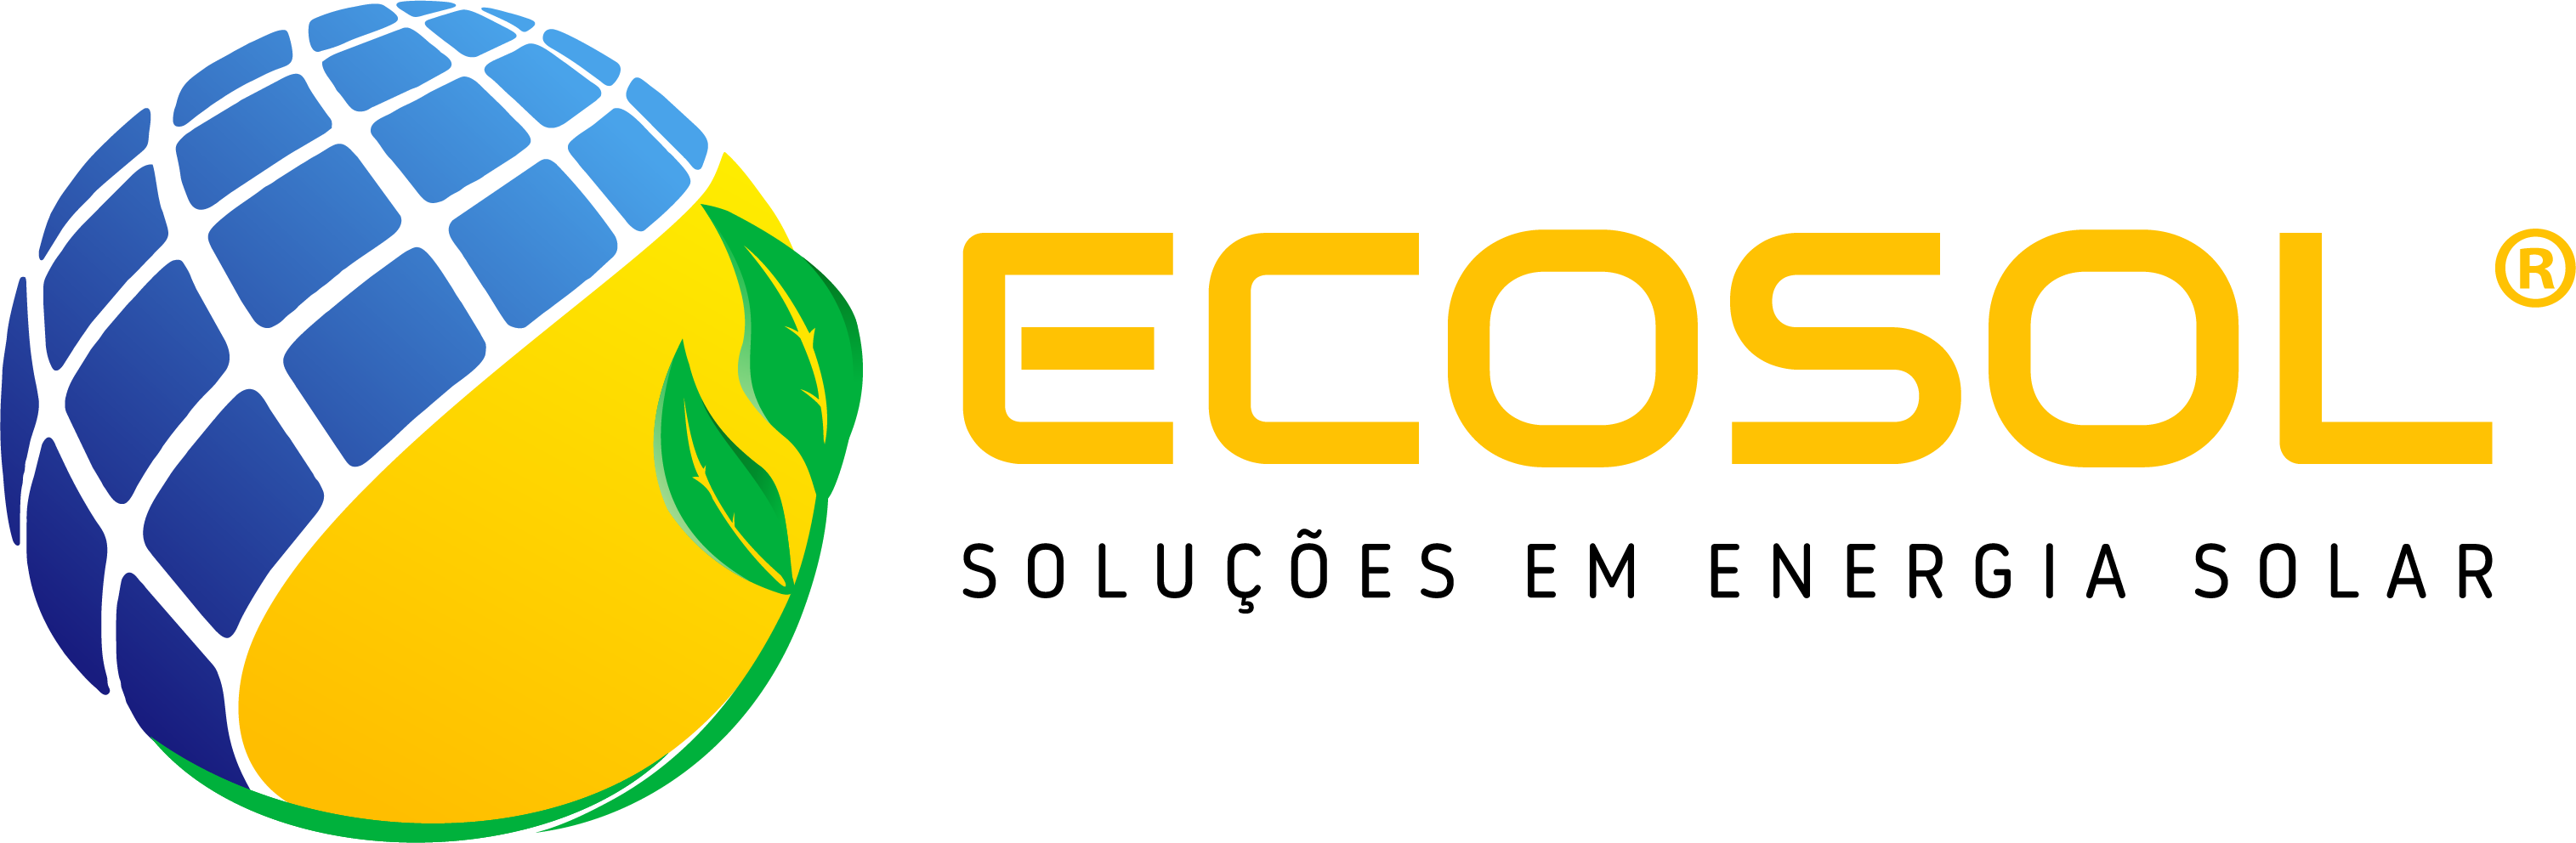 Ecosol Logo